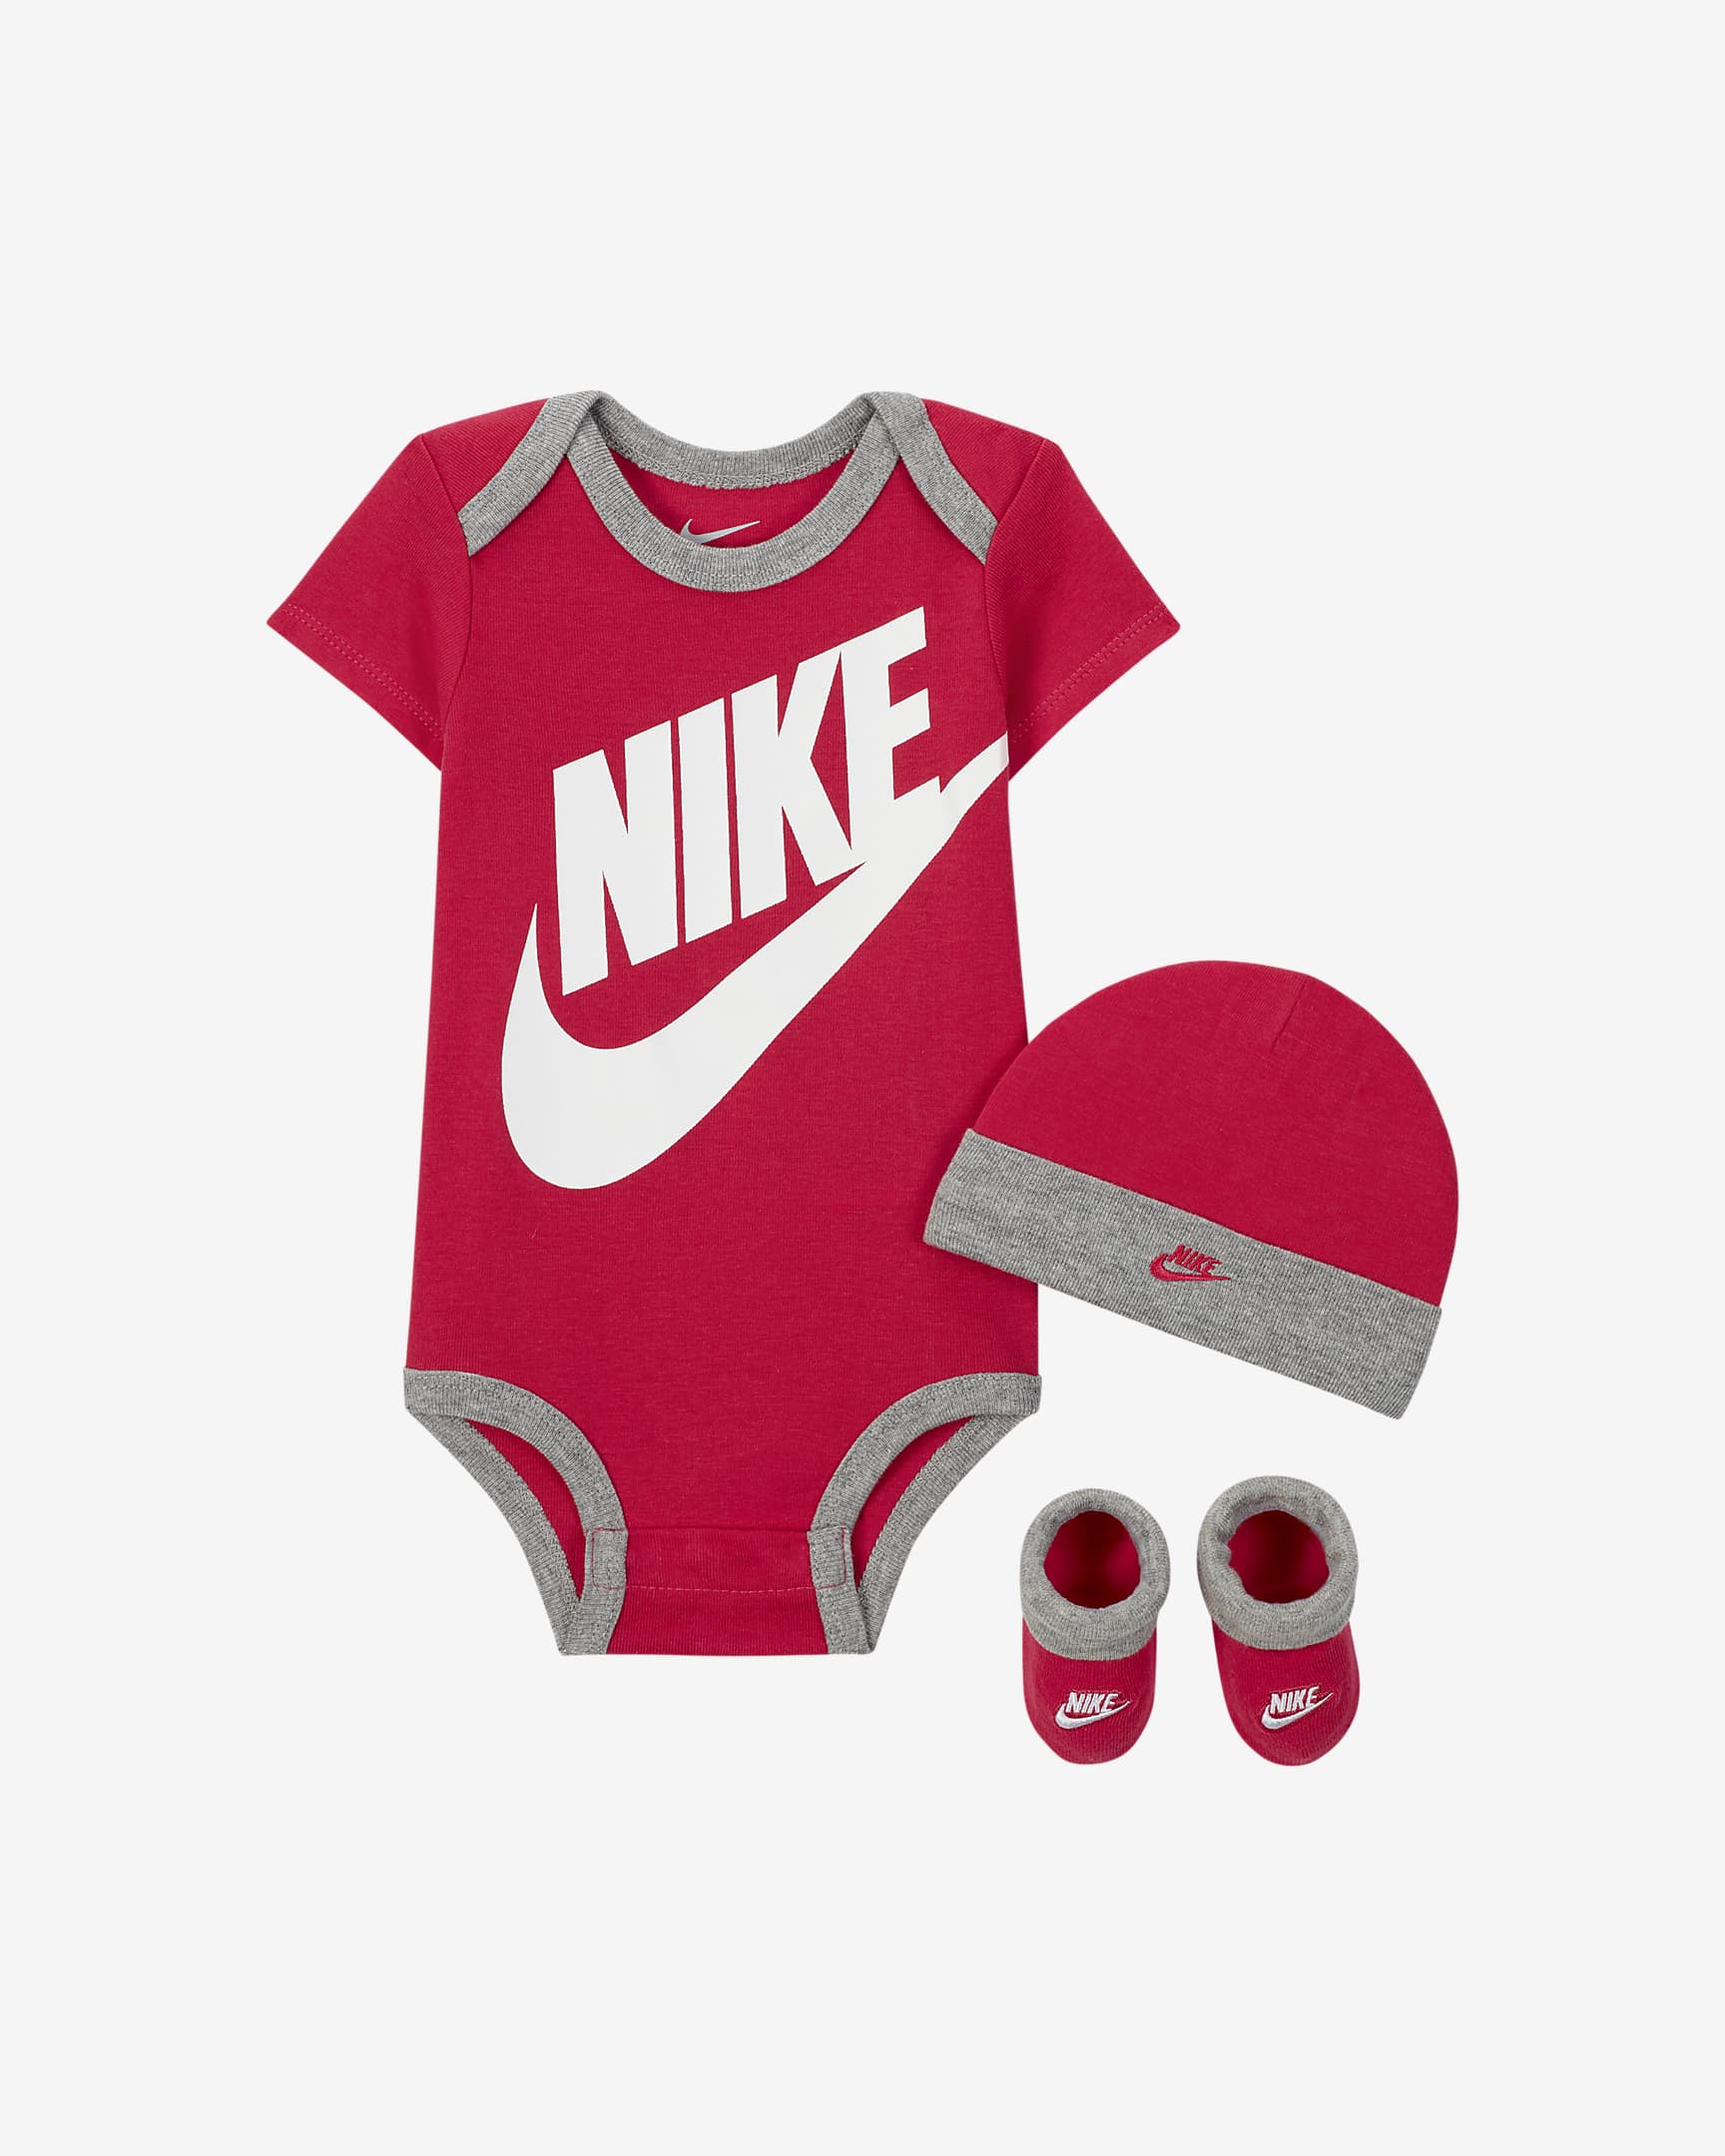 Completo Nike da bambino - Rosa/Grigio/Bianco